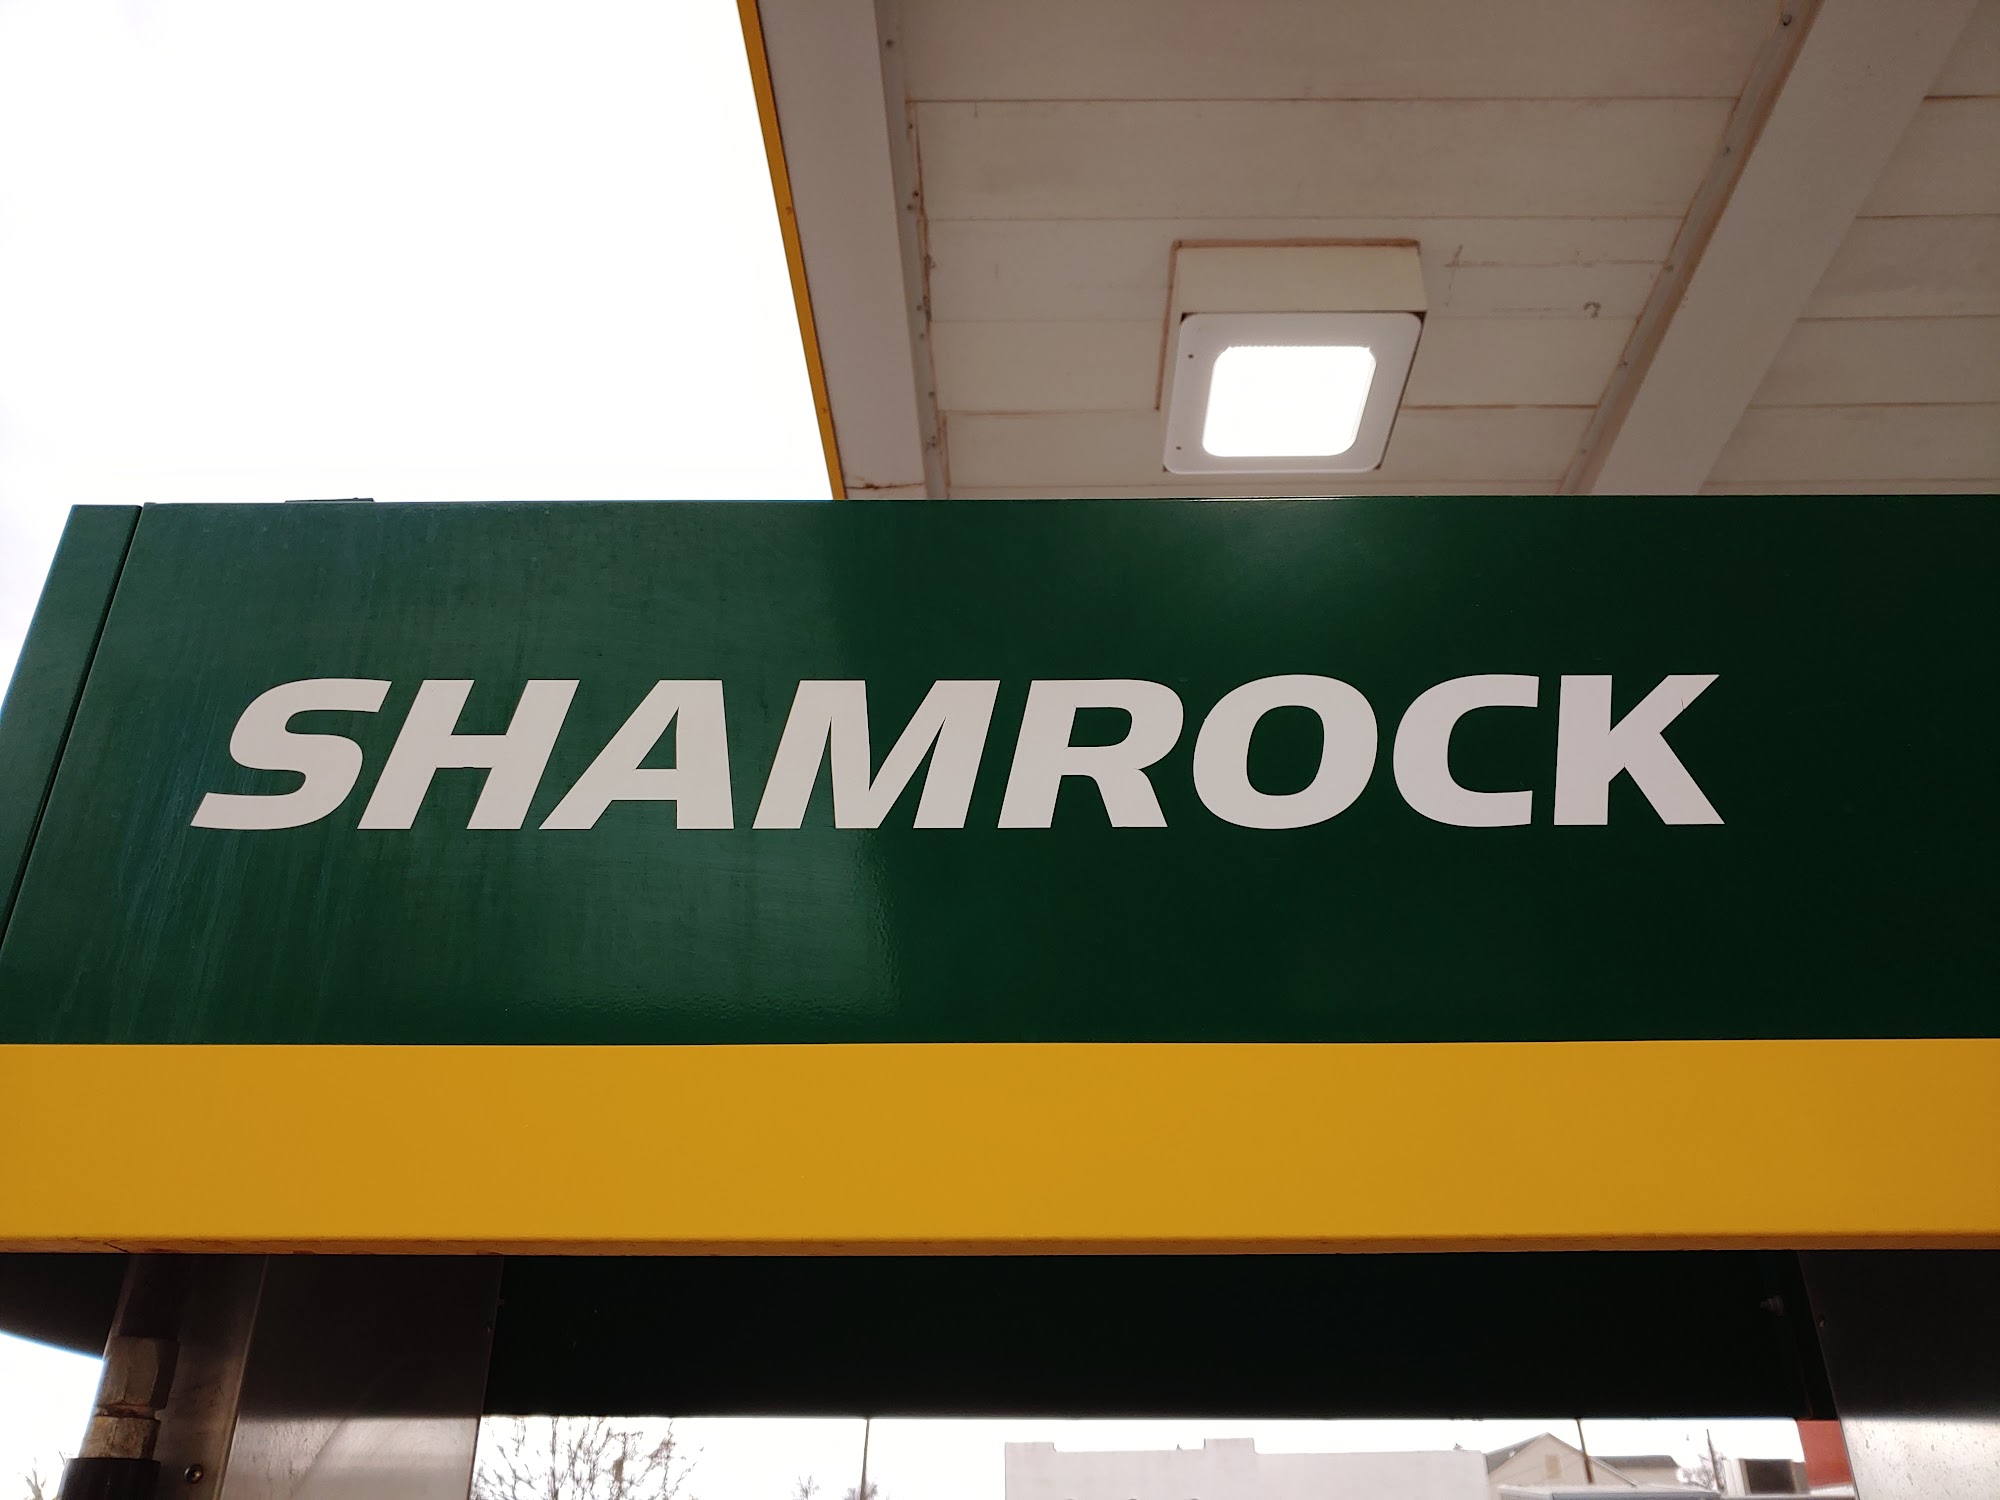 Shamrock onda oil company